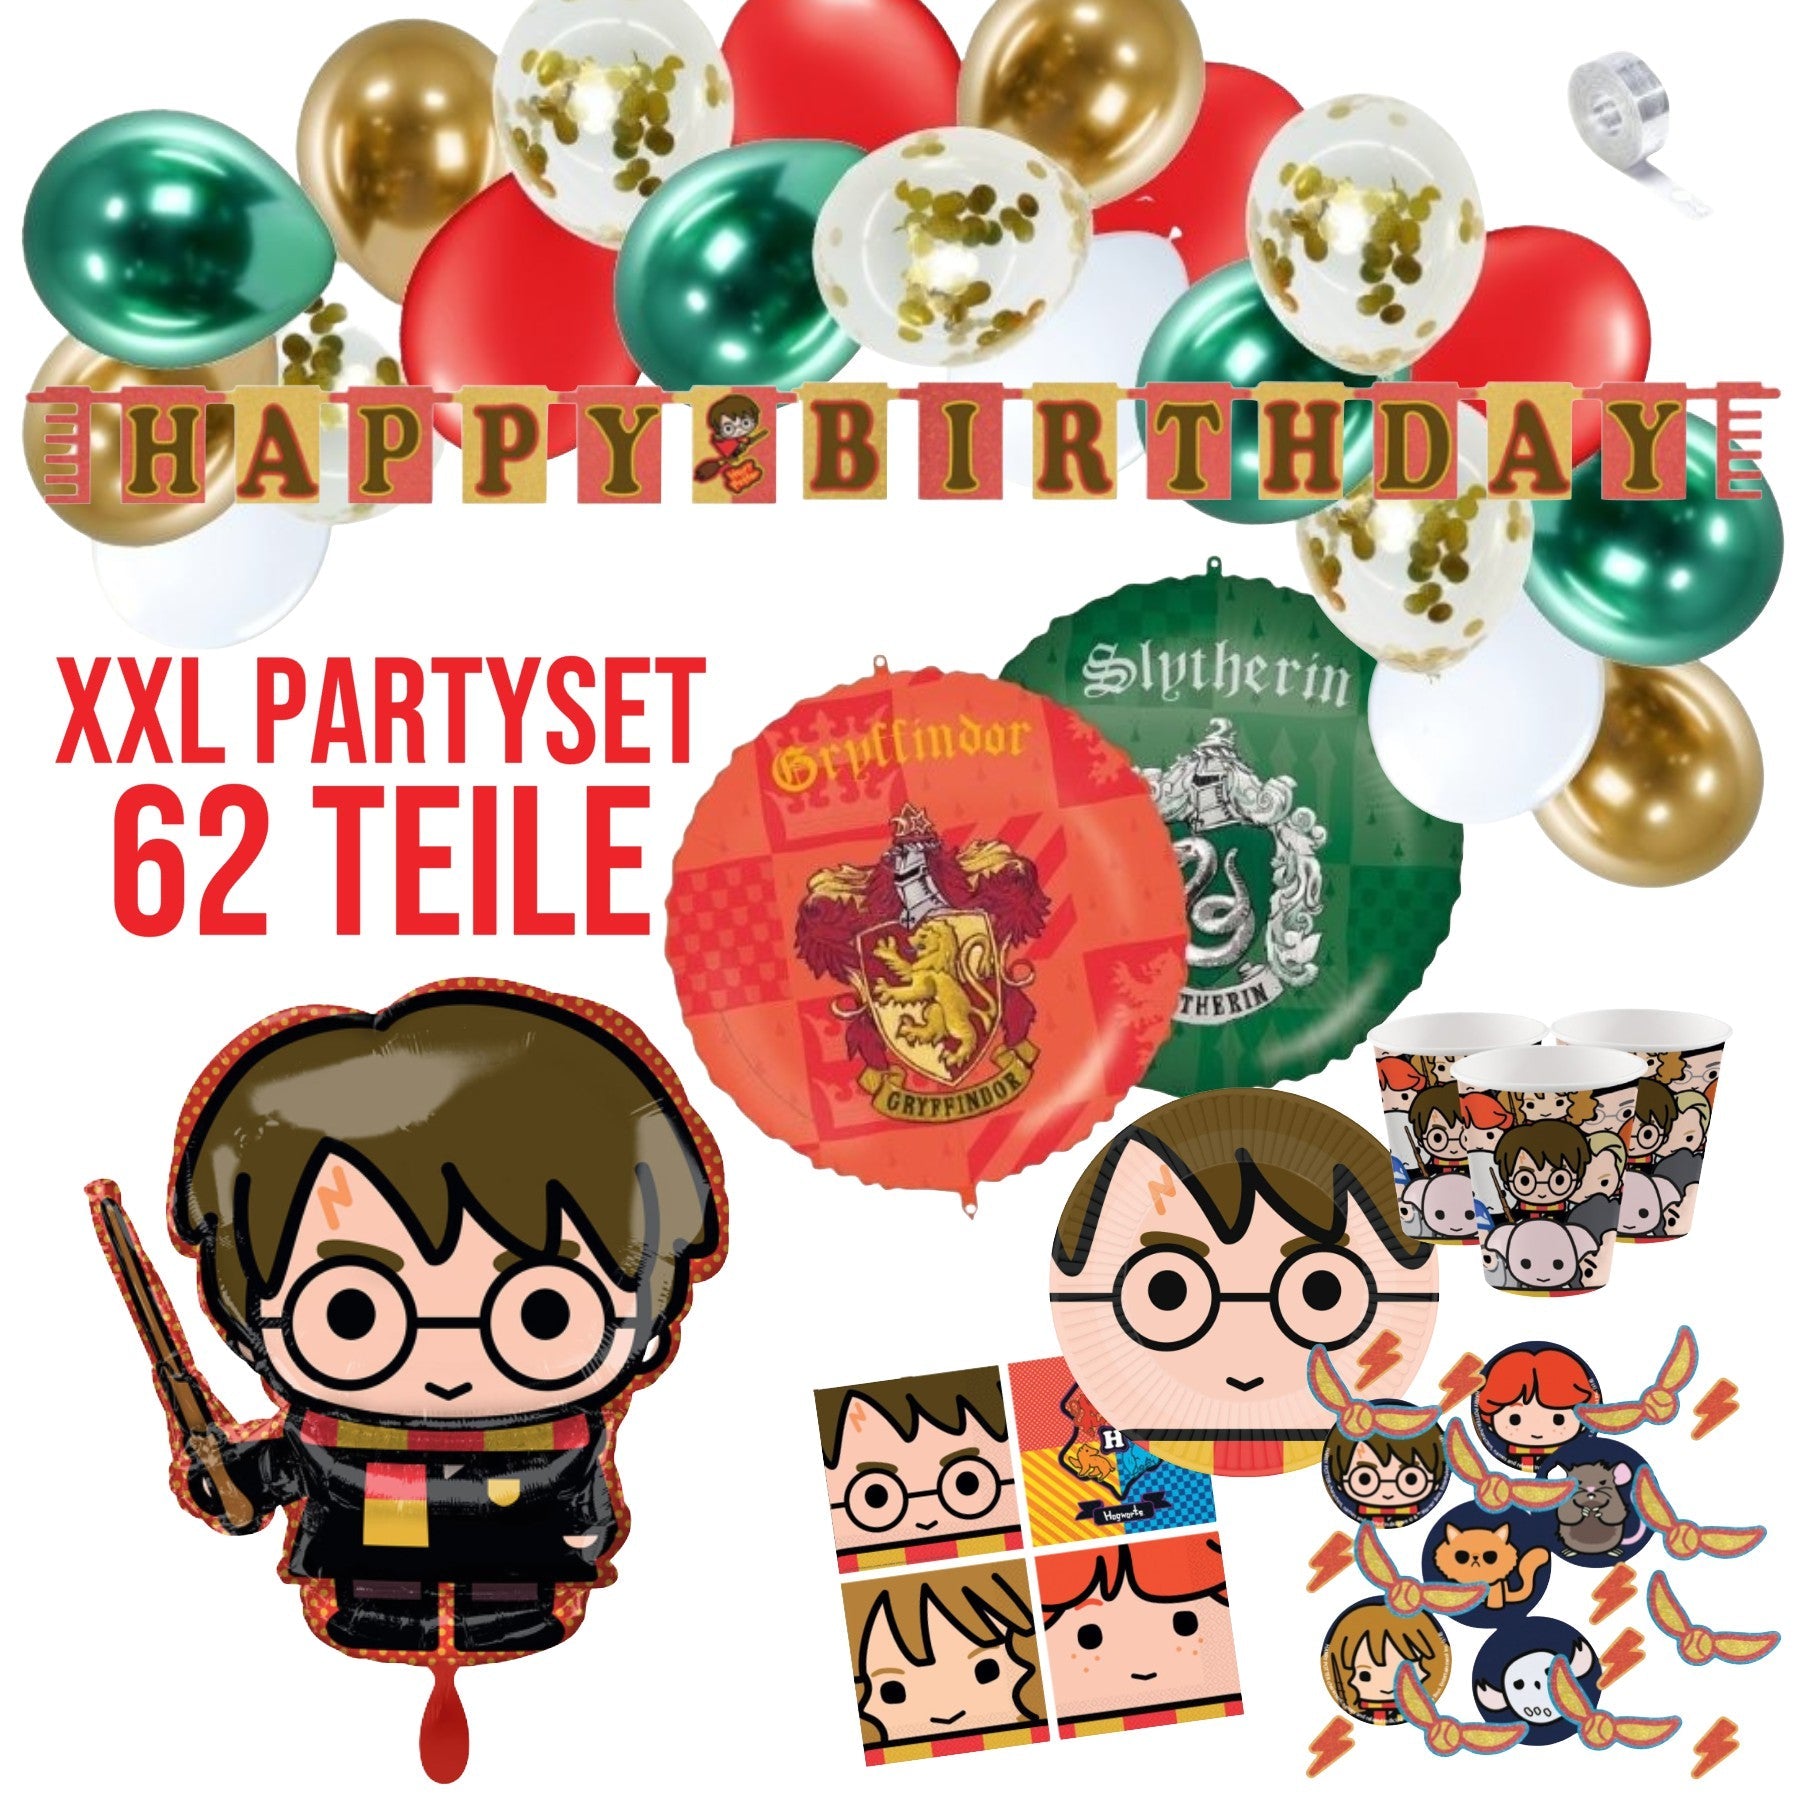 XXL Partykarton "Harry Potter" 62-teilig - Party im Karton